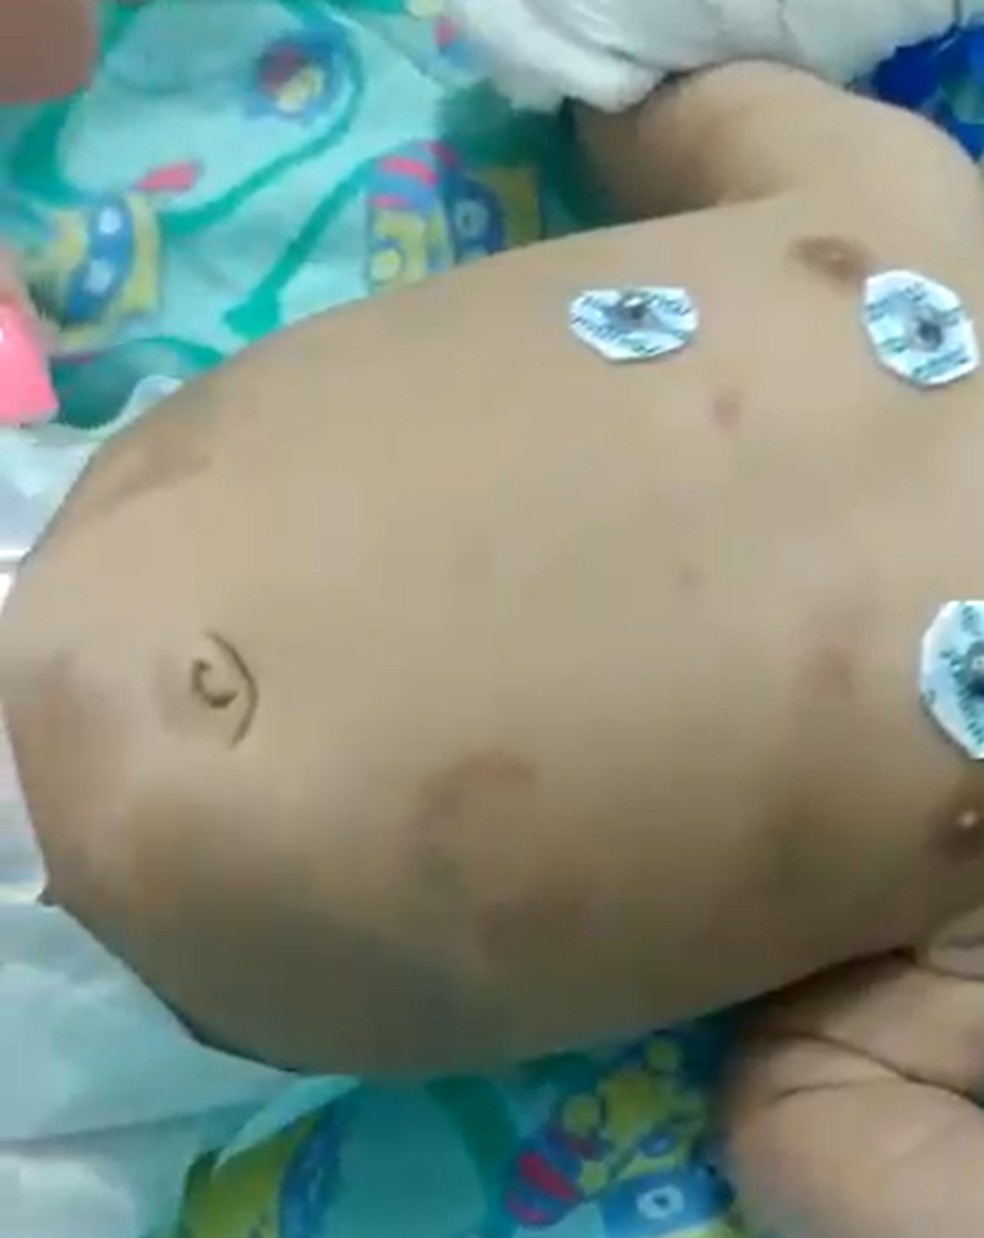 Além de fraturas na costela e afundamento do crânio, bebê de 2 meses também chegou ao hospital de São Fidélis, RJ, com marcas de mordida e hematomas — Foto: Reprodução